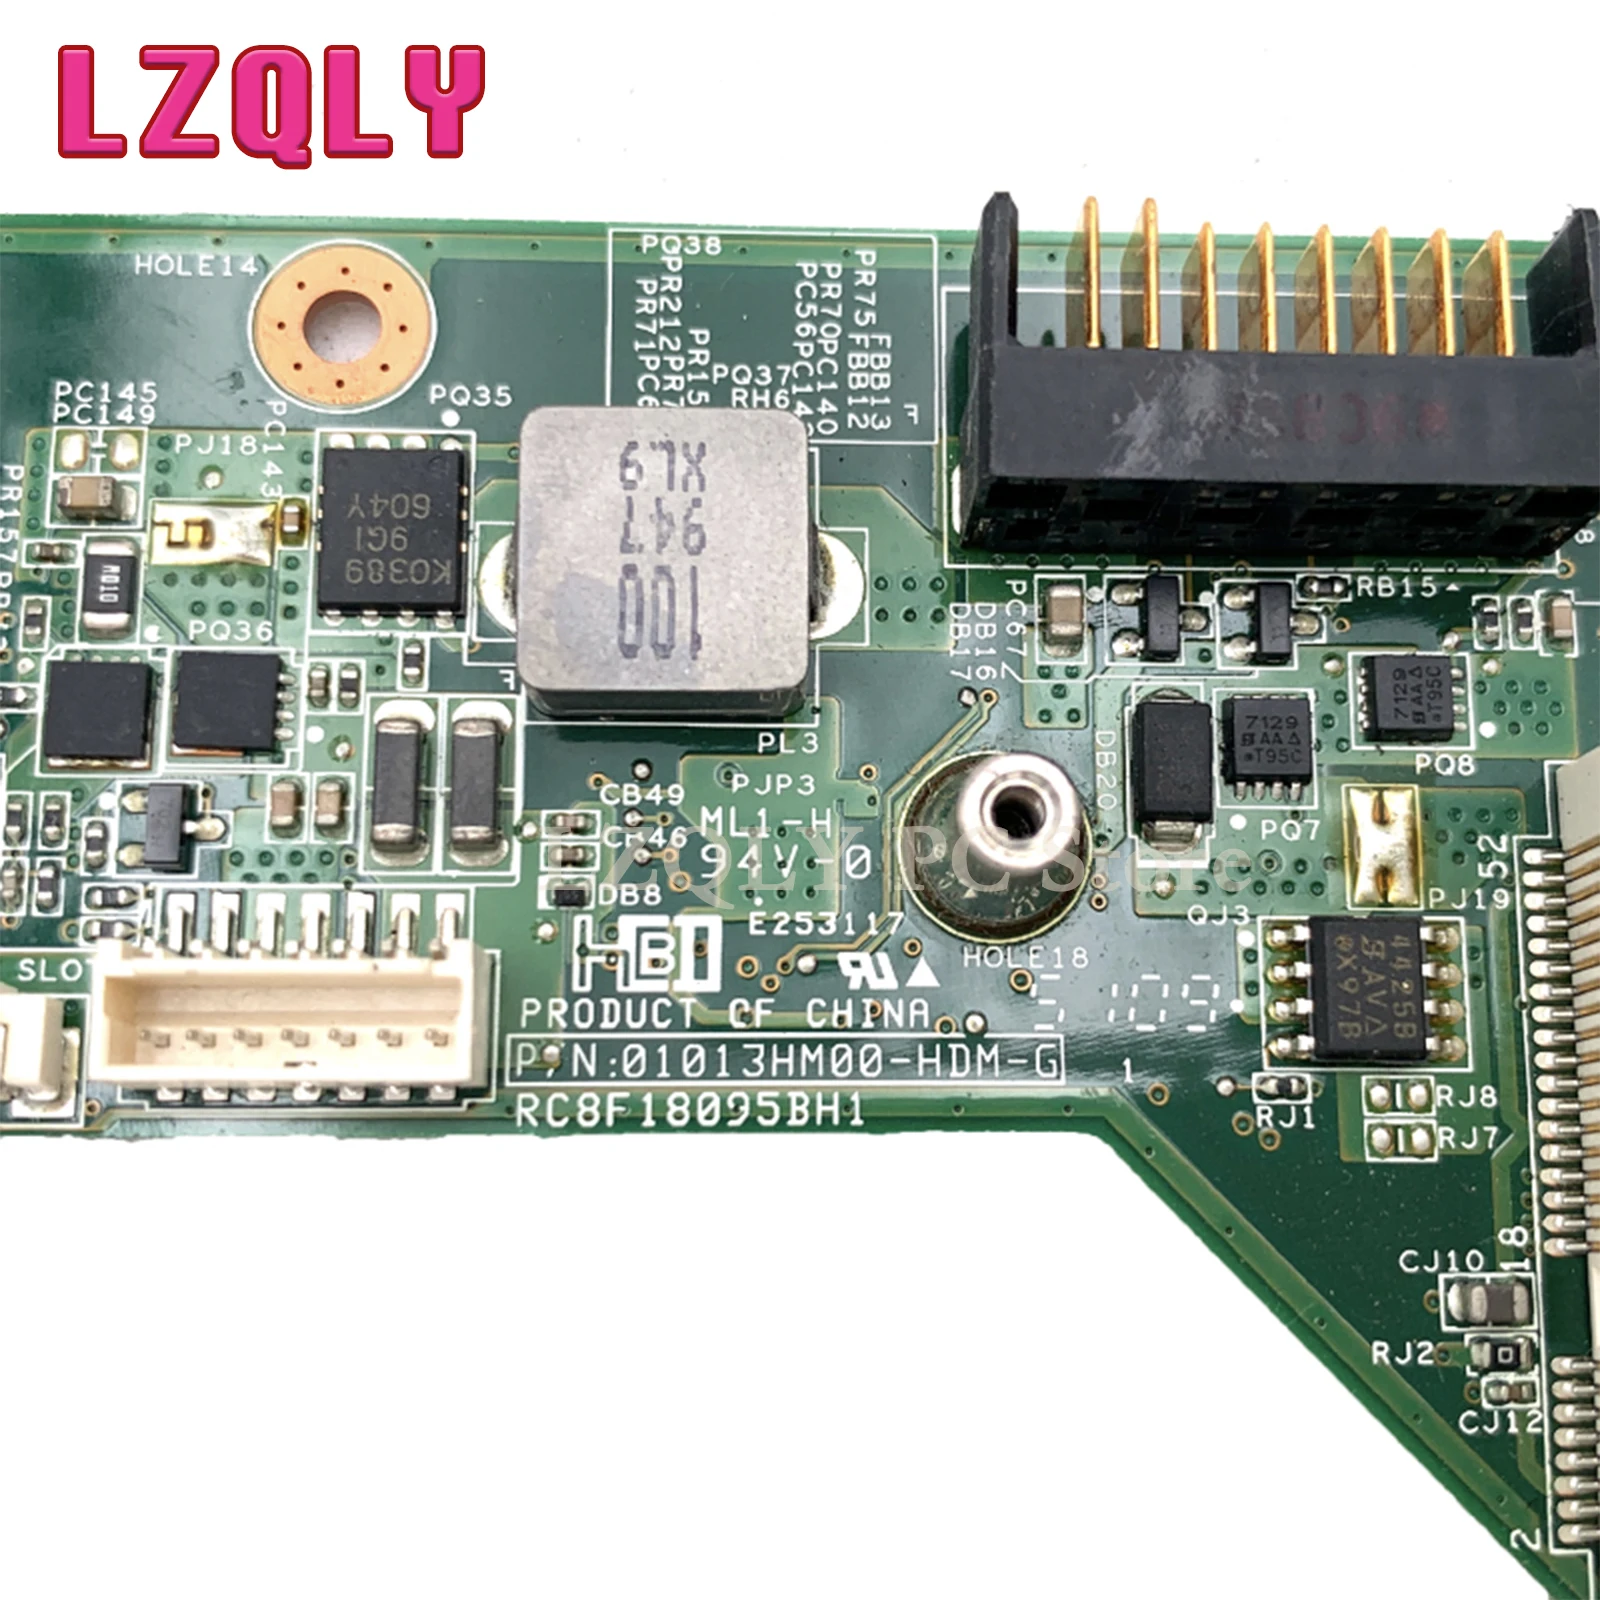 LZQLY 610160-001 597673-001 laptop placa Mãe Para o HP CQ62 G62 DDR3 livre CPU da placa Principal teste completo Imagem 4